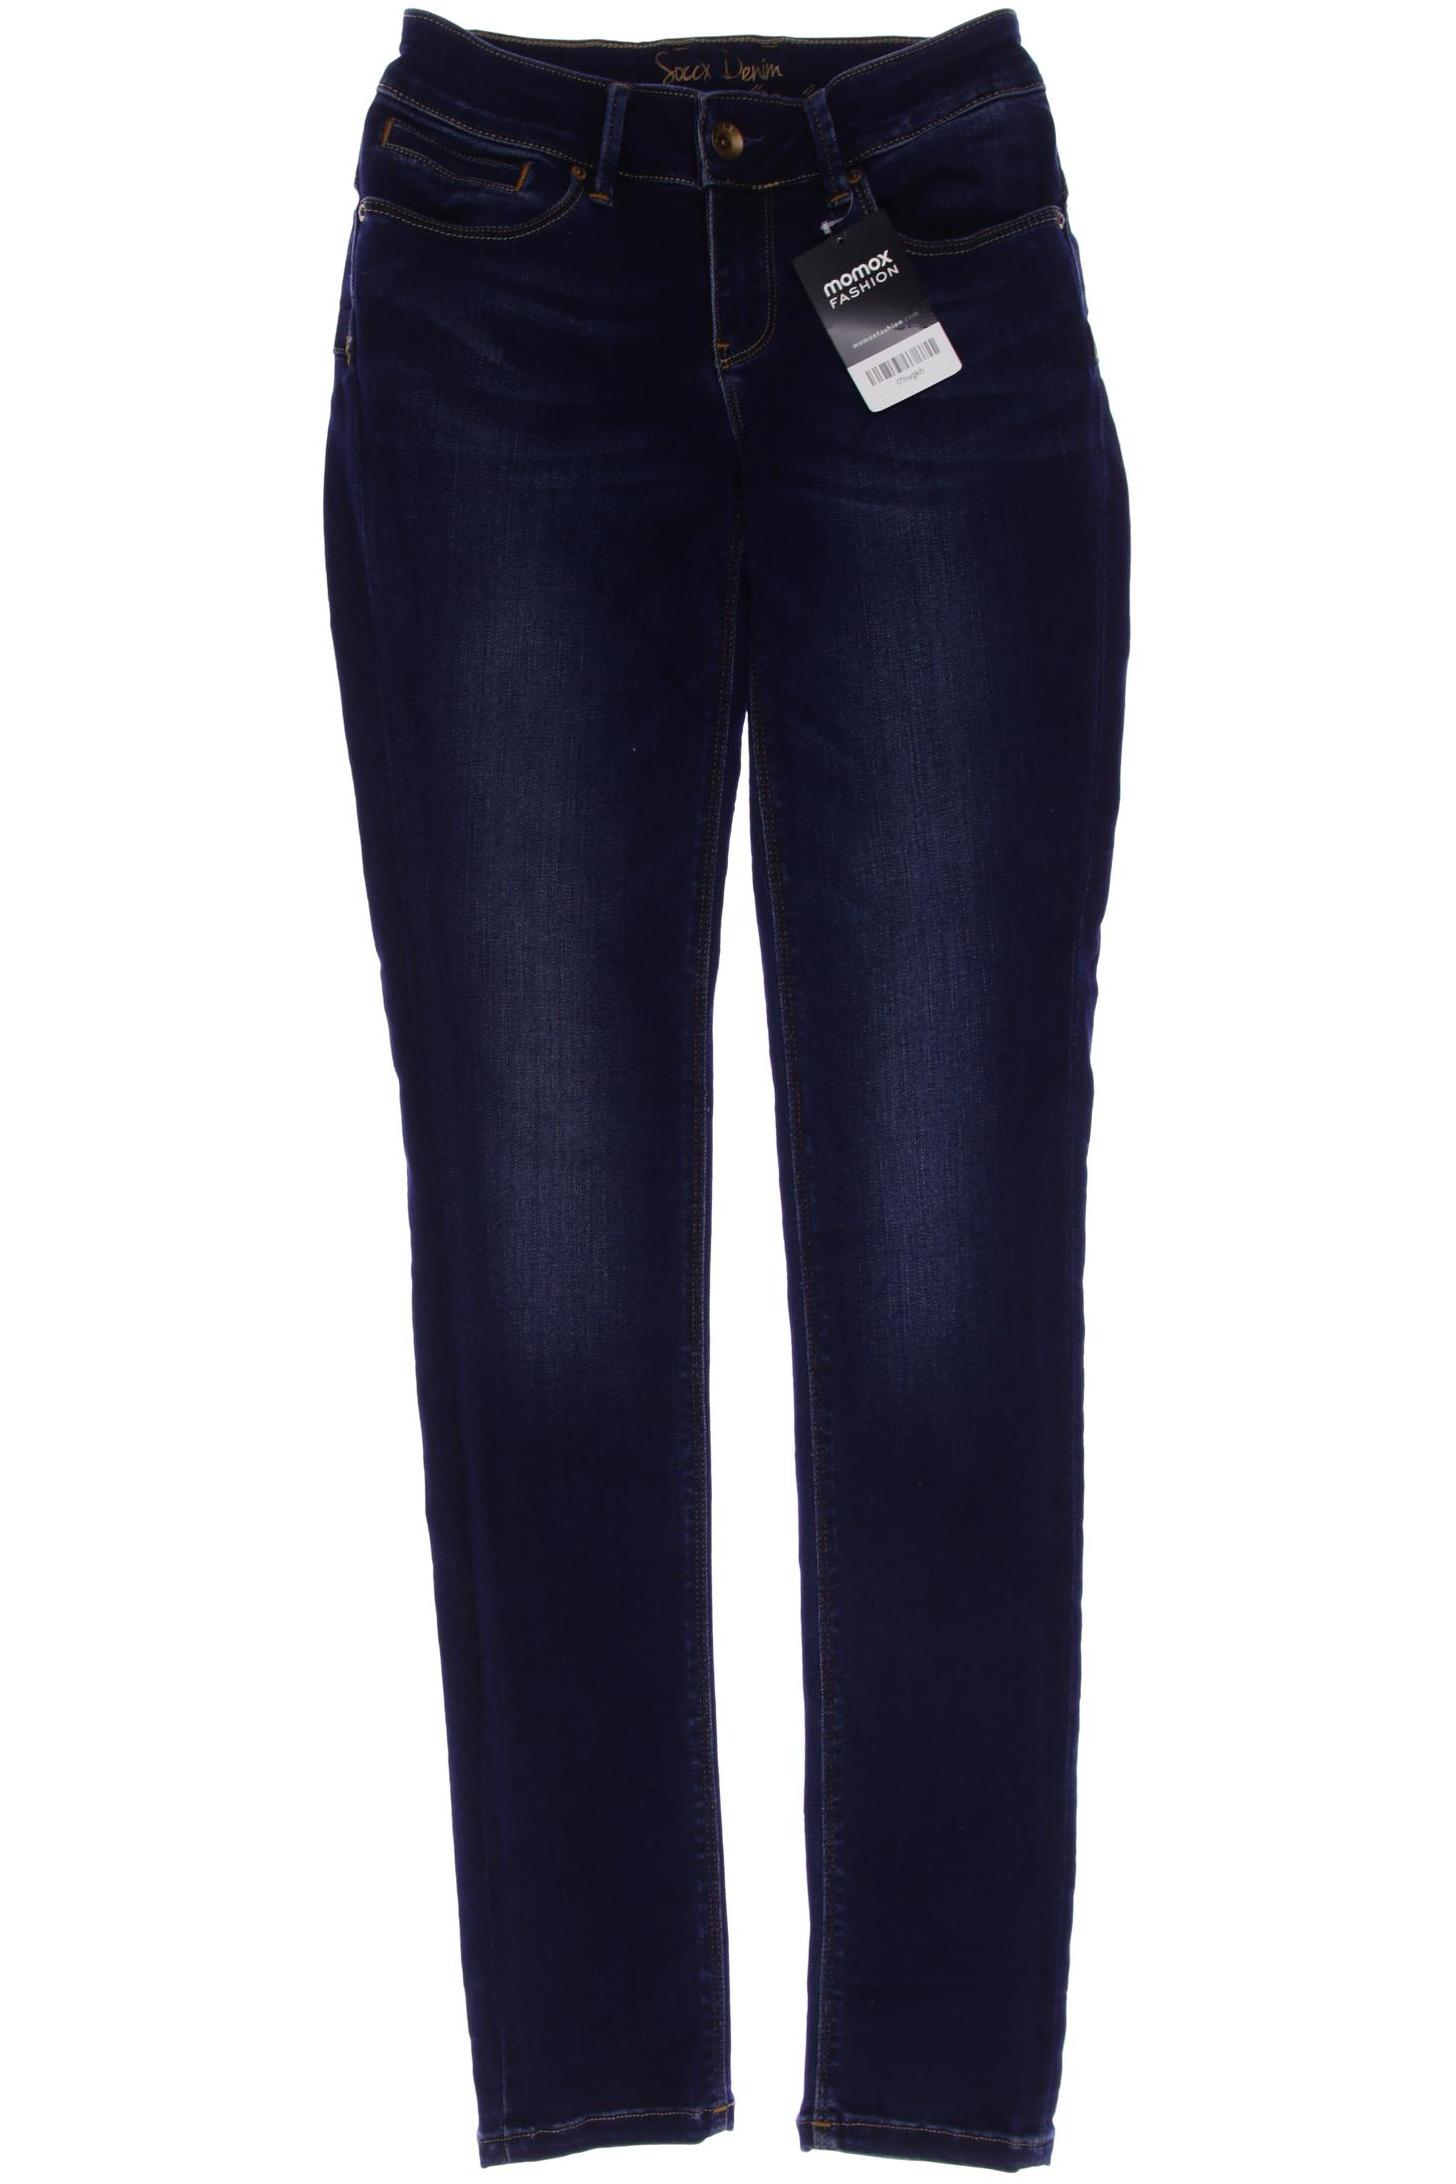 Soccx Damen Jeans, marineblau, Gr. 38 von SOCCX